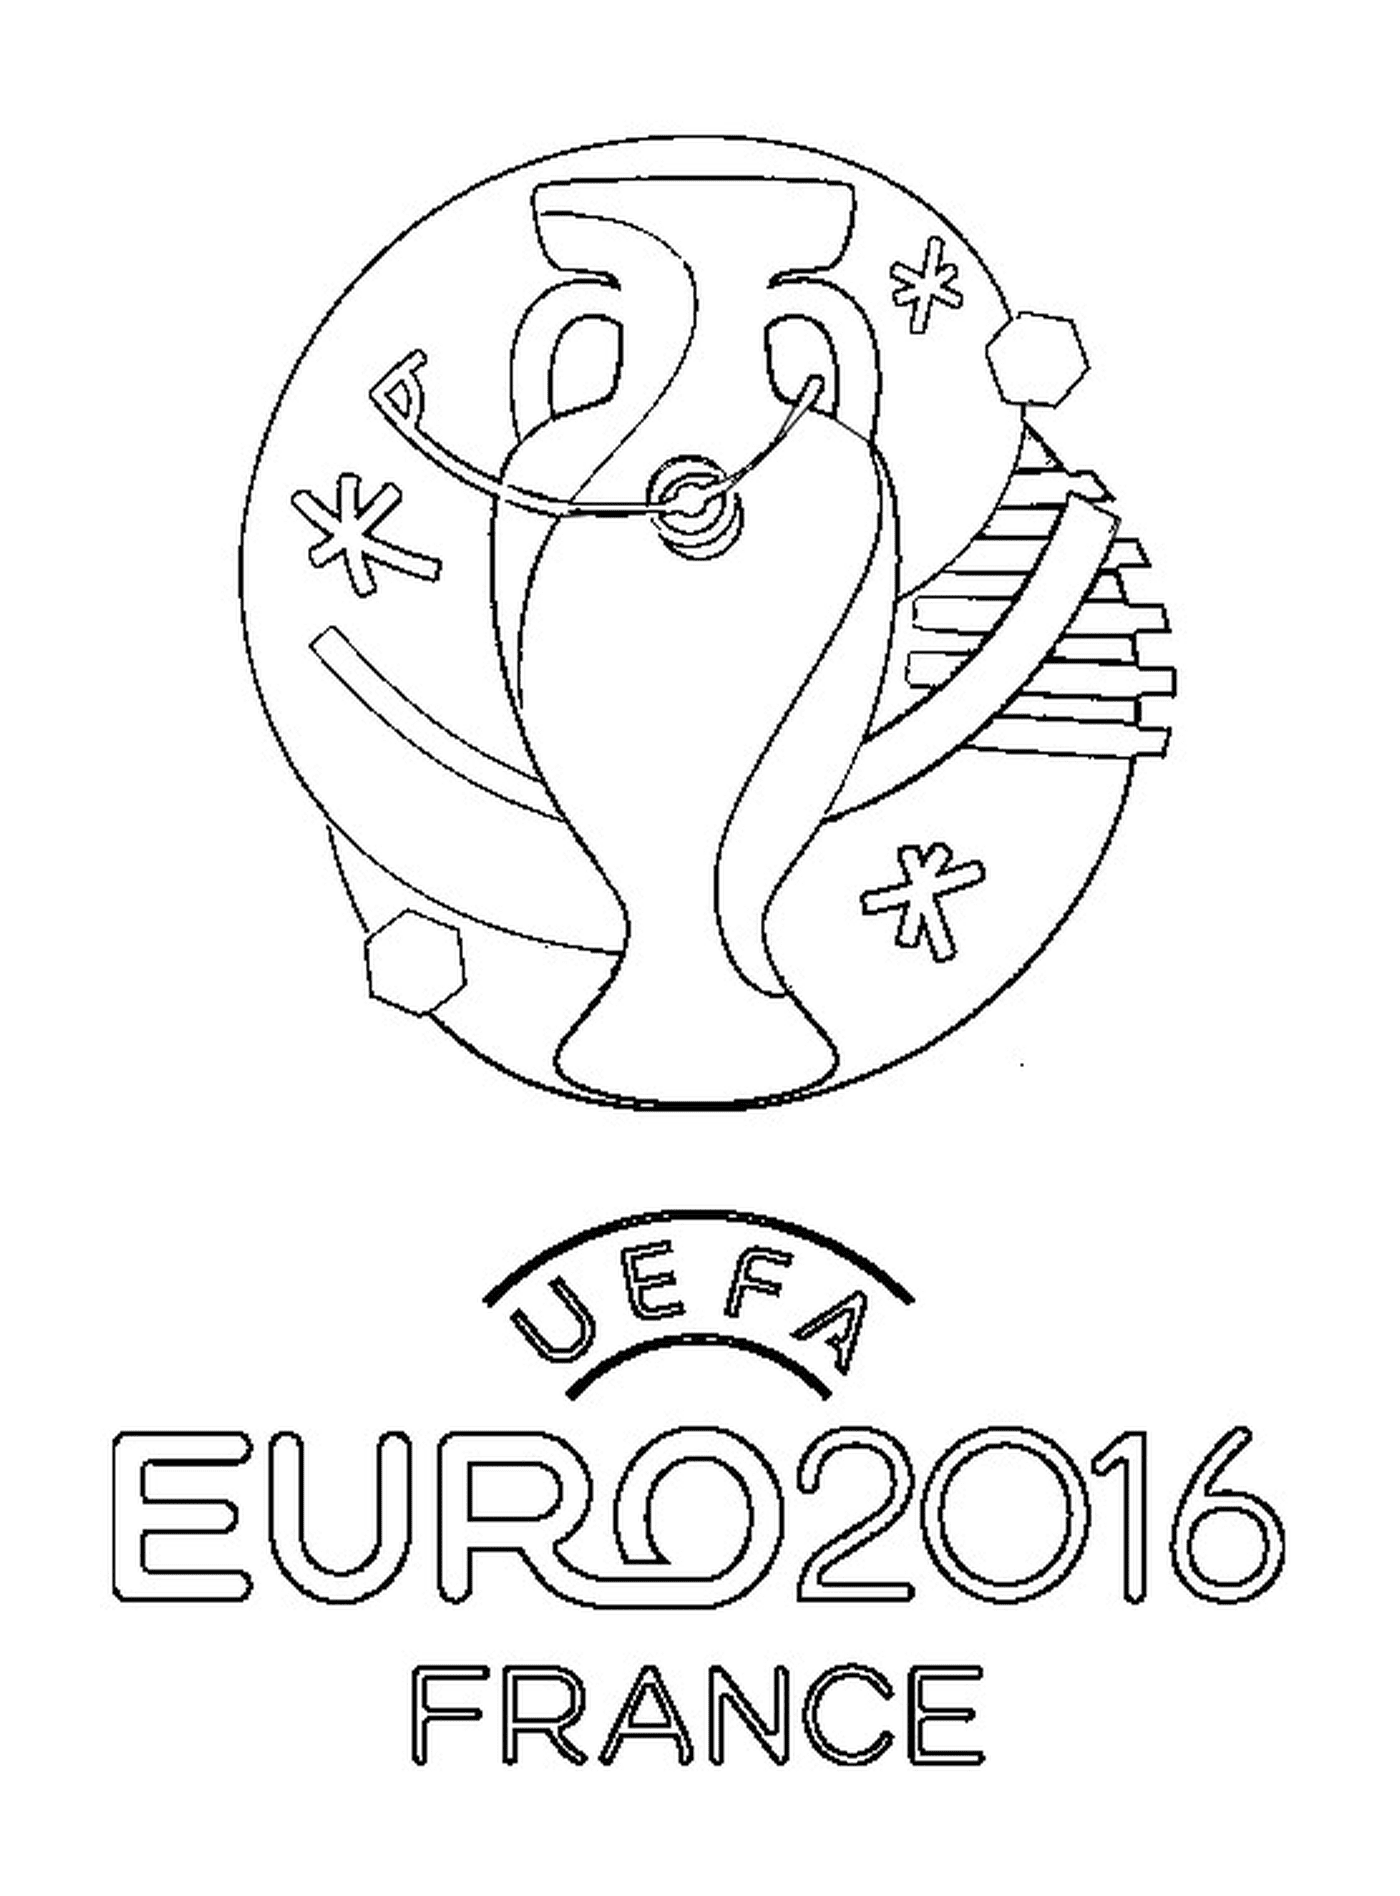  Логотип < < Евро-2016 > > во Франции 